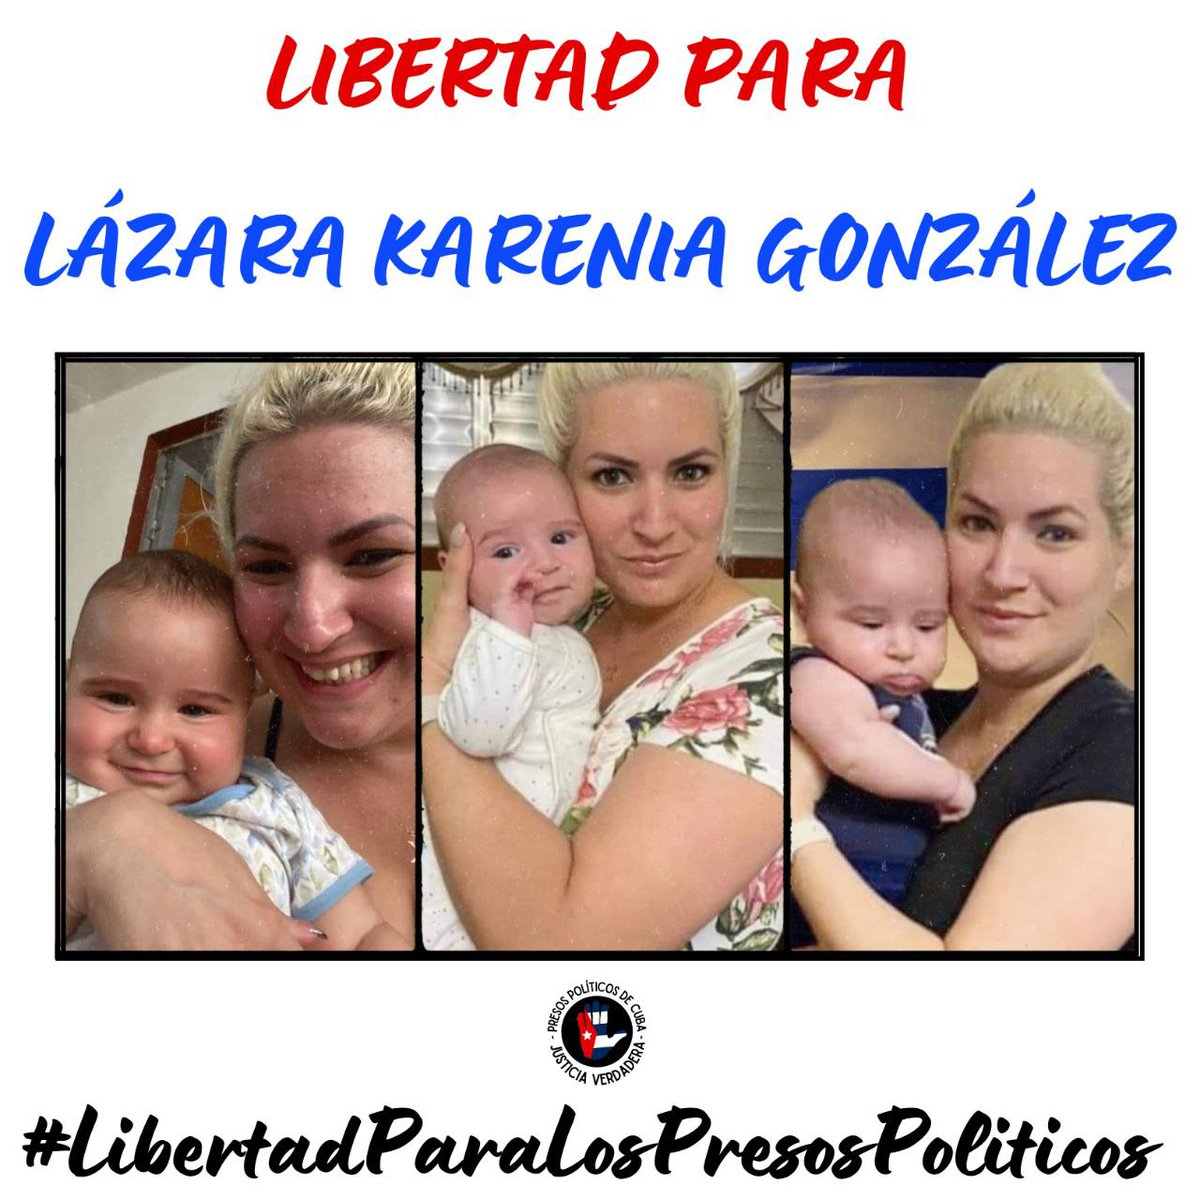 En este #DíaDeLasMadres, recordemos a Lázara Karenia Gonzalez, una de las Valientes Madres de #Cuba que han sido separadas de sus hijos, por su lucha por la libertad. Su valentía y amor incondicional son un recordatorio de lo que significa ser madre. #PresasPoliticasDeCuba